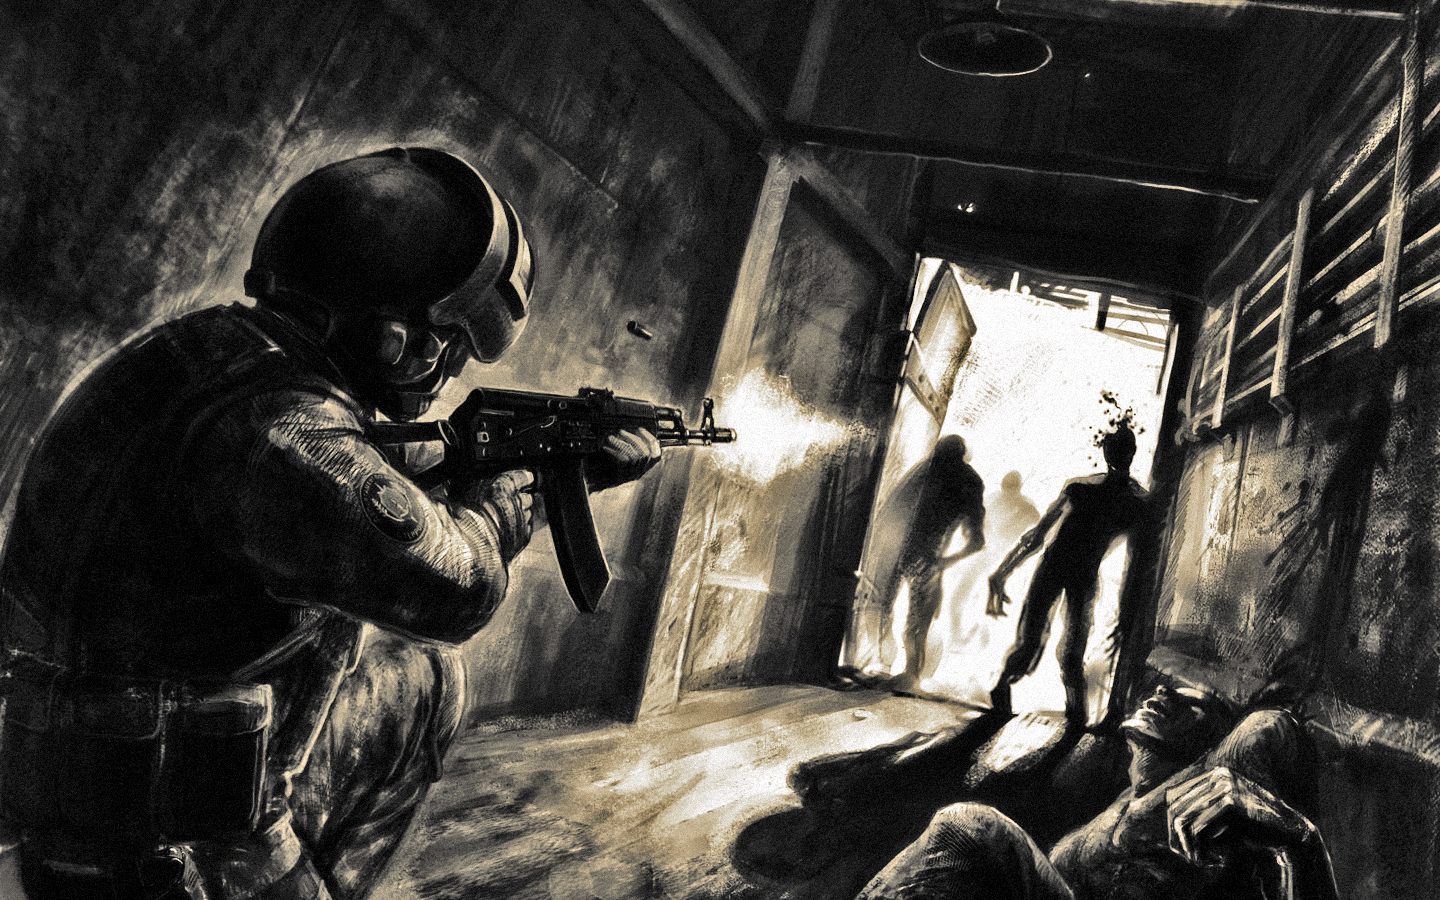 Dark Horror Zombie Warrior Soldier Weapons Guns Art Wallpaper